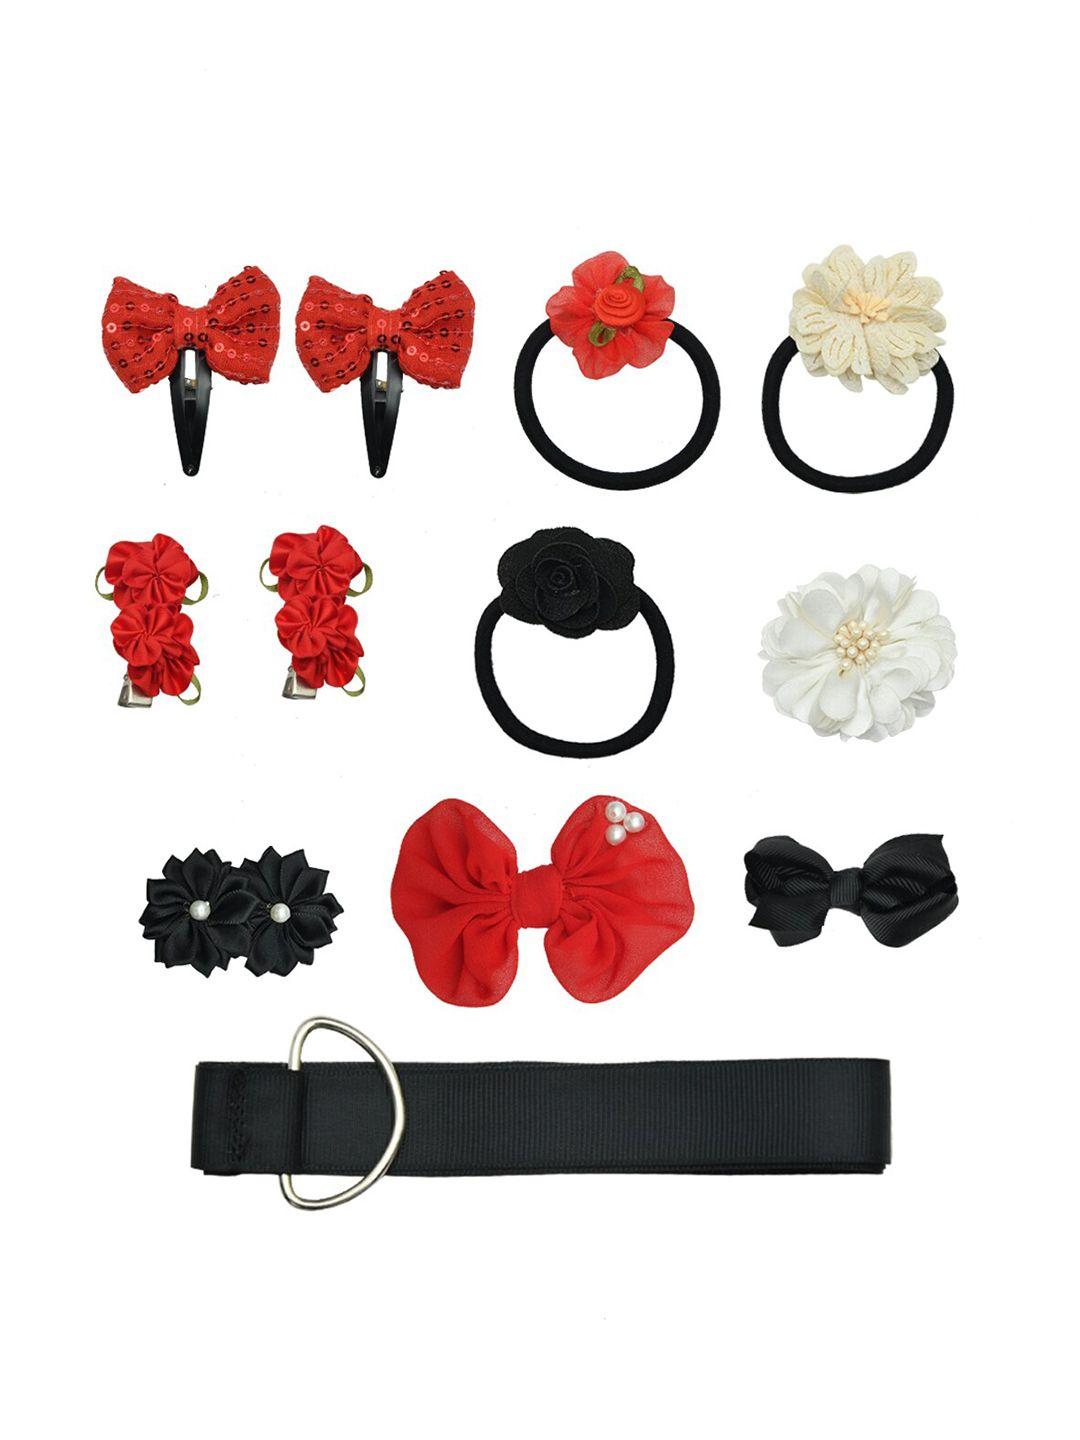 funkrafts girls red & black embellished hair accessory set of 11